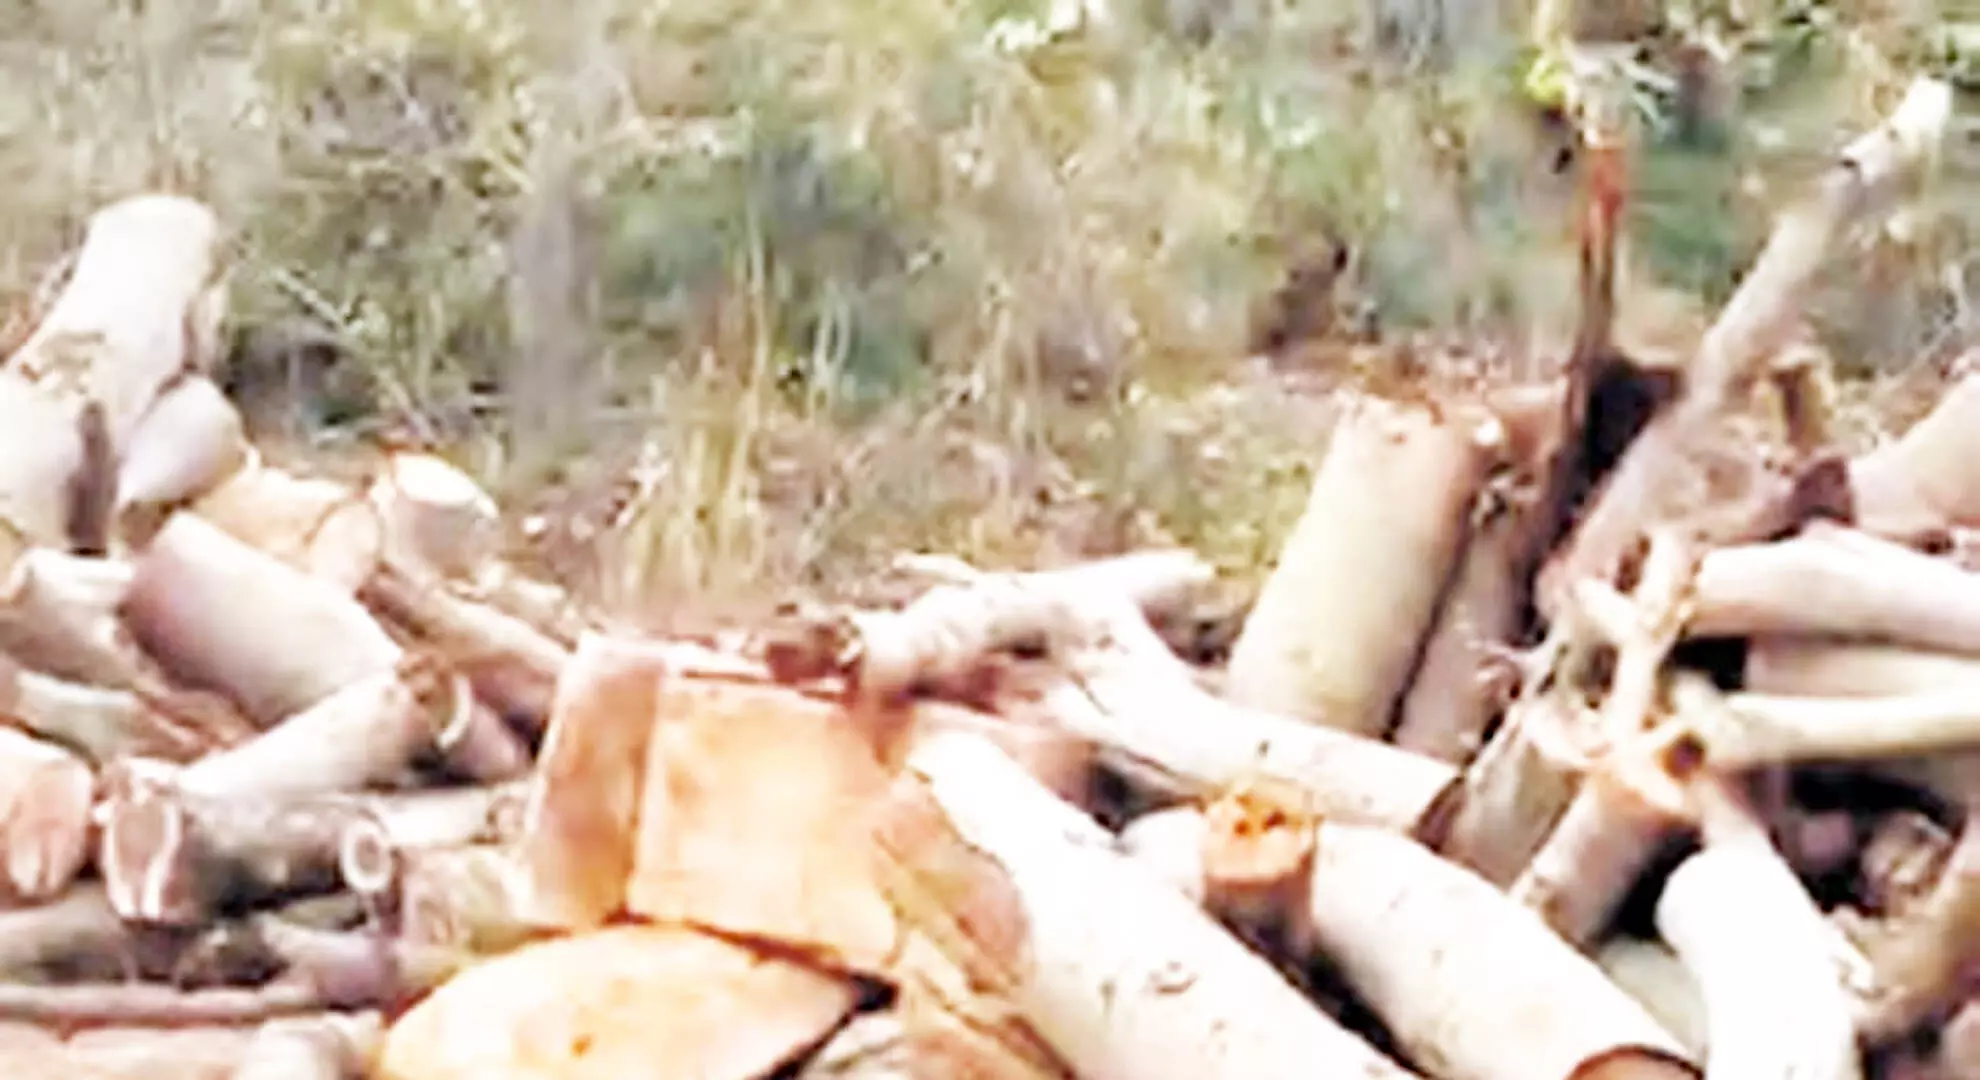 तमिलनाडु पर्यटन विभाग ने बोट हाउस के पास काटे गए पेड़ों के बारे में जानकारी देने से इनकार कर दिया